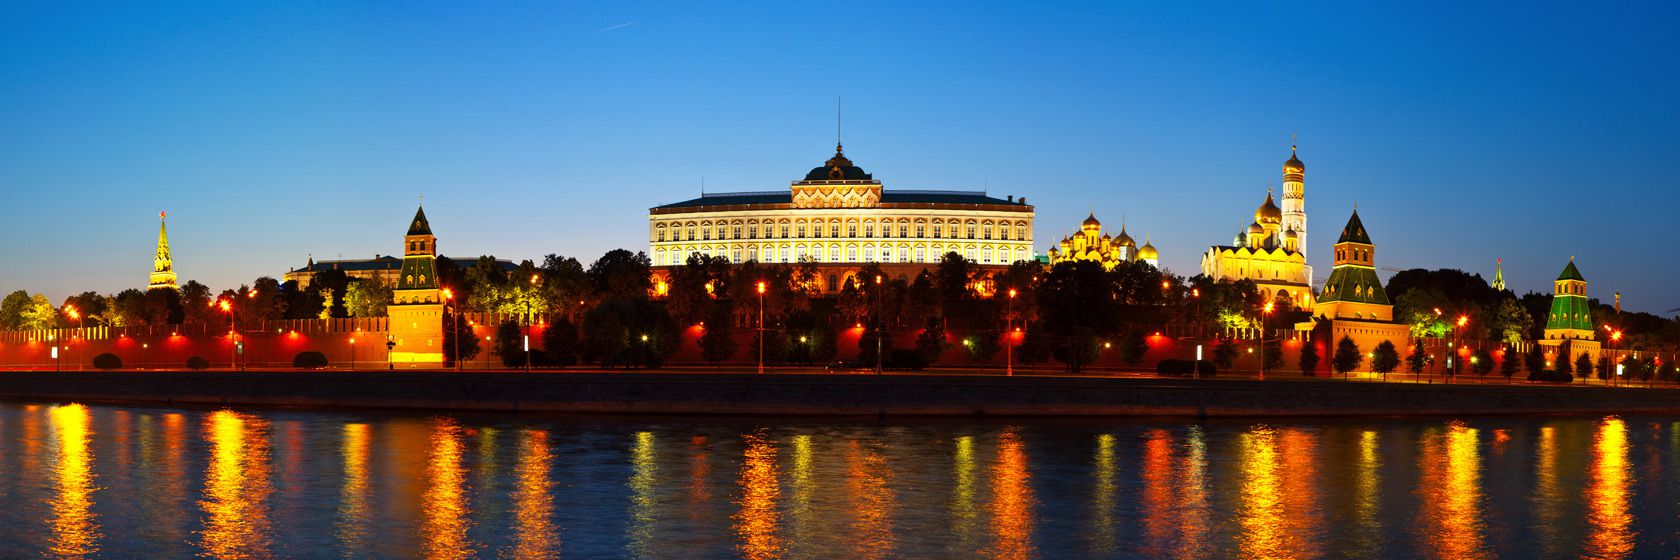 Den vackra horisonten en natt p en av resa till moskva | Jrns Resor